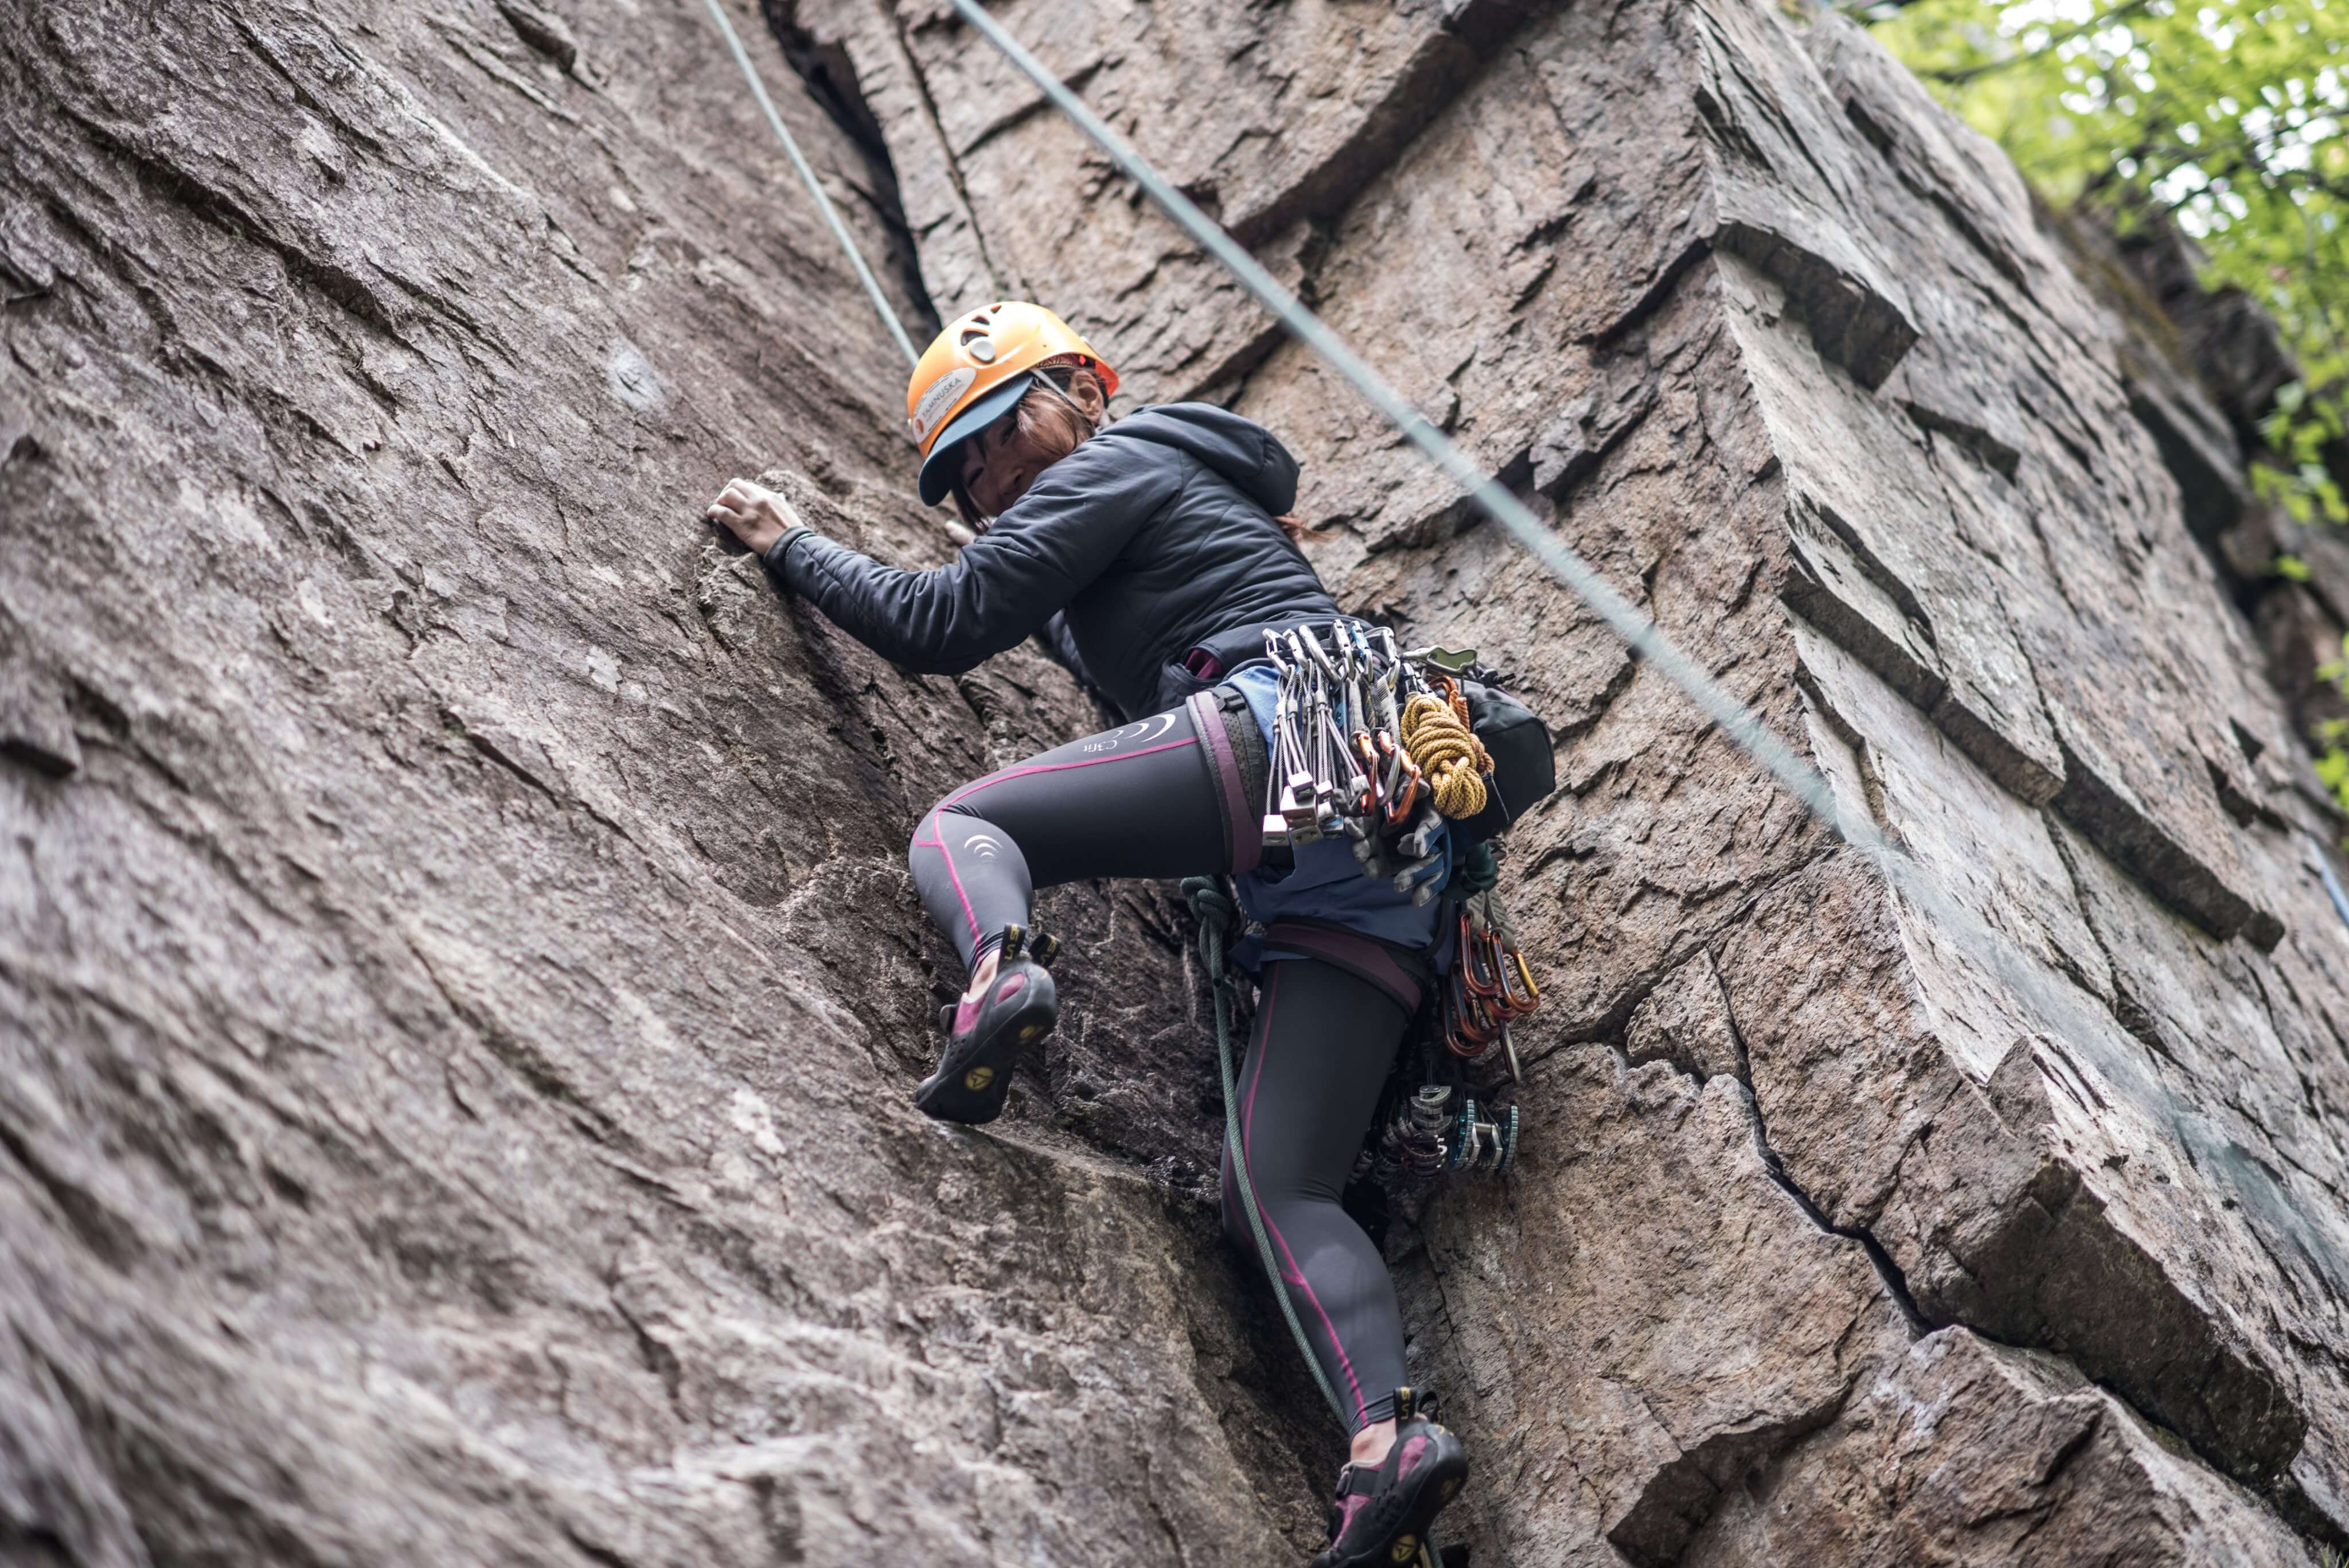 Climb up the rock wall in Skaha Rock @evazolaphoto